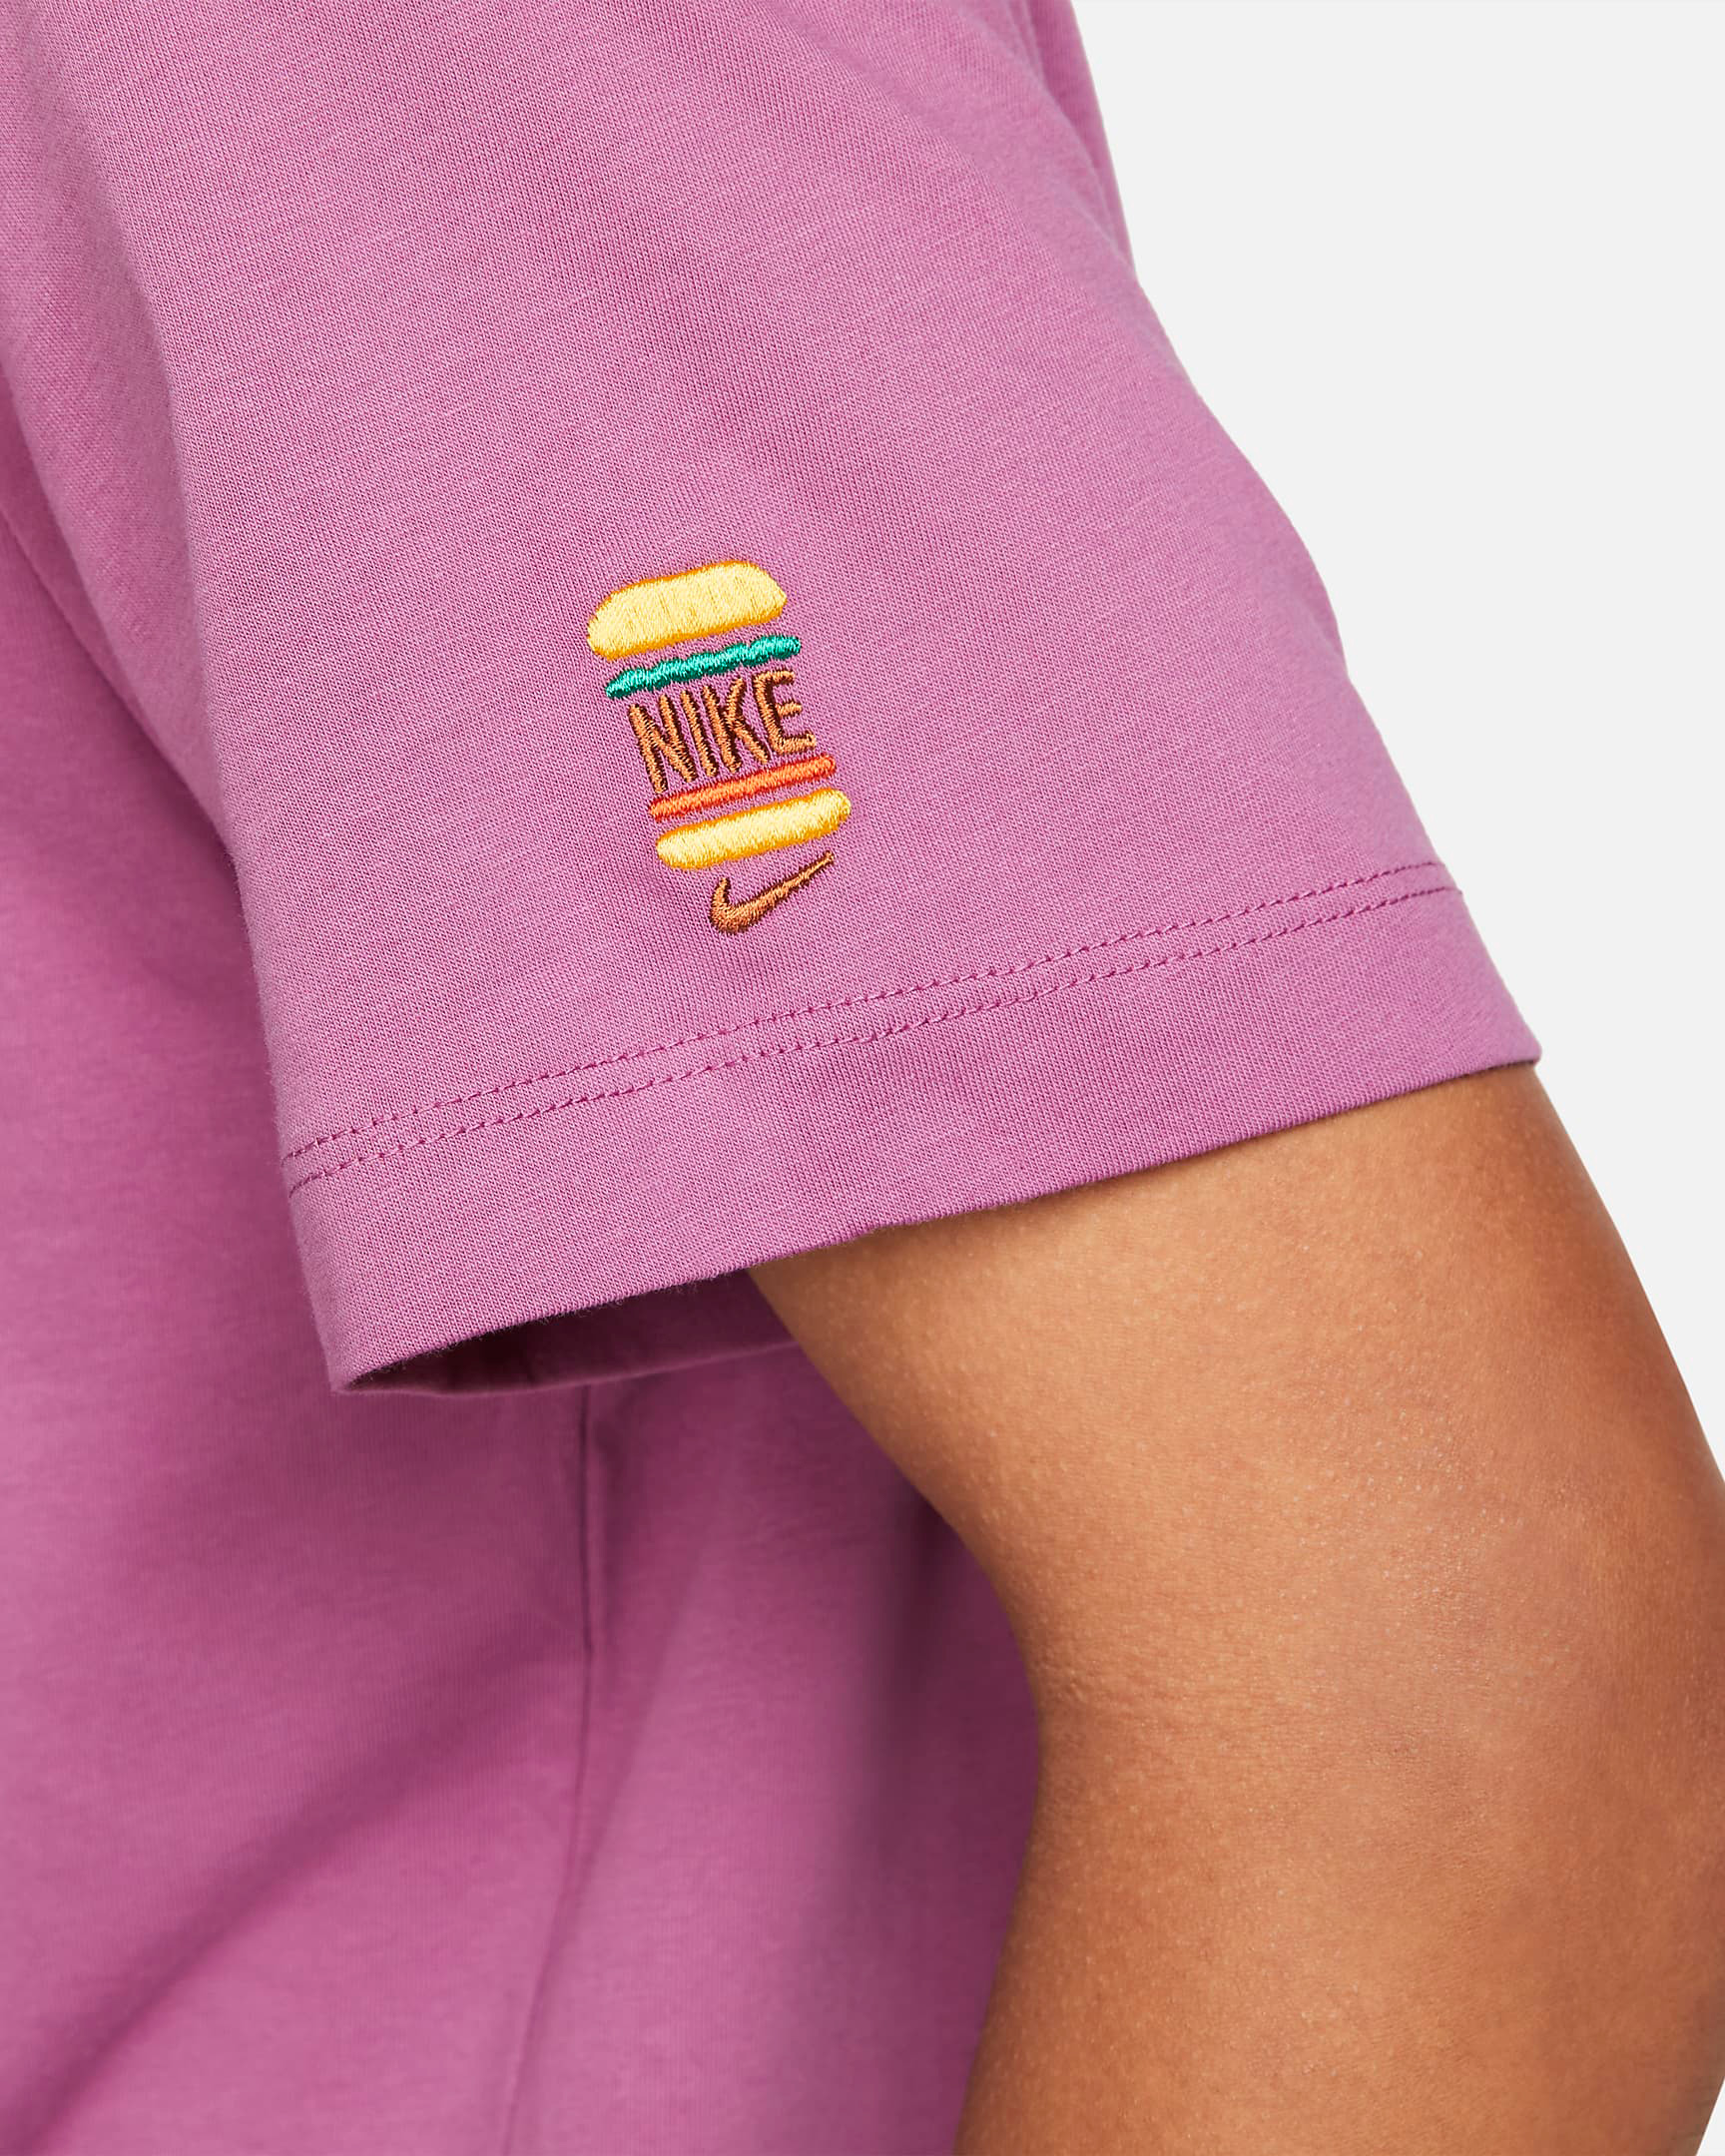 nike-light-bordeaux-burger-shirt-3